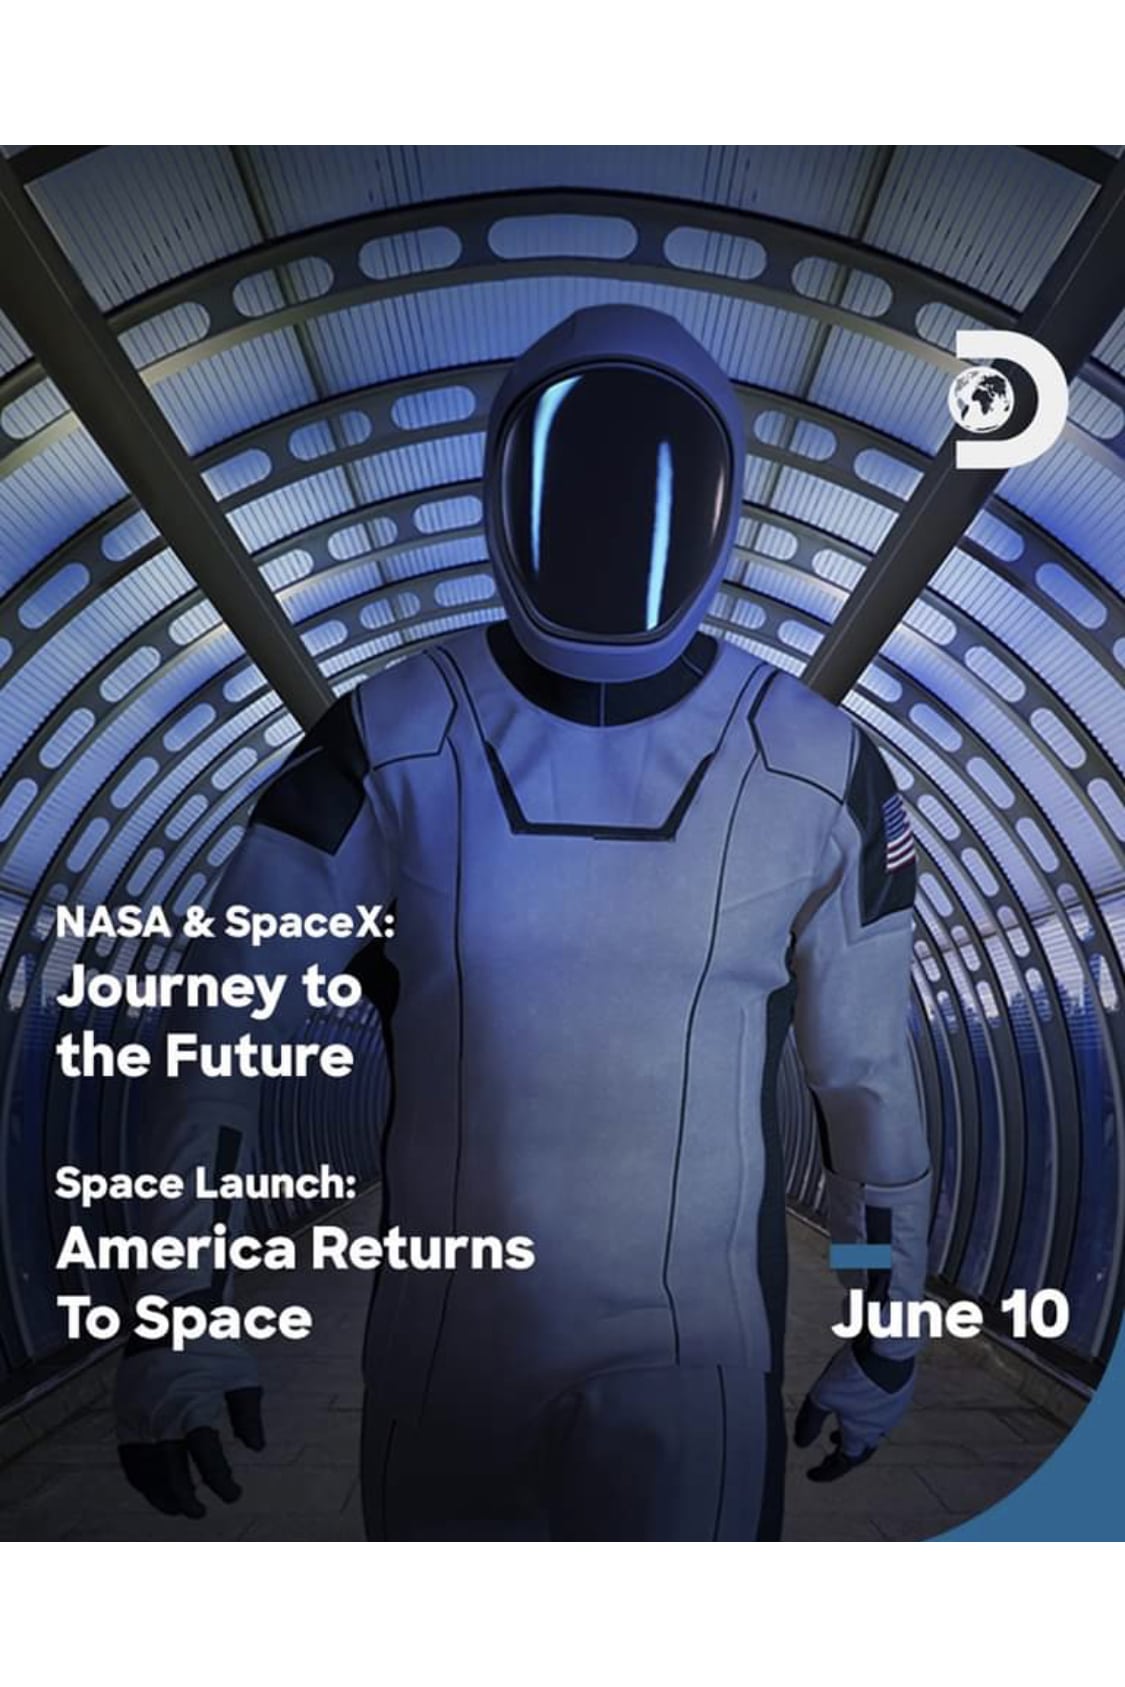 Caratula de NASA & SPACEX: JOURNEY TO THE FUTURE (NASA & SpaceX: Journey to the Future) 